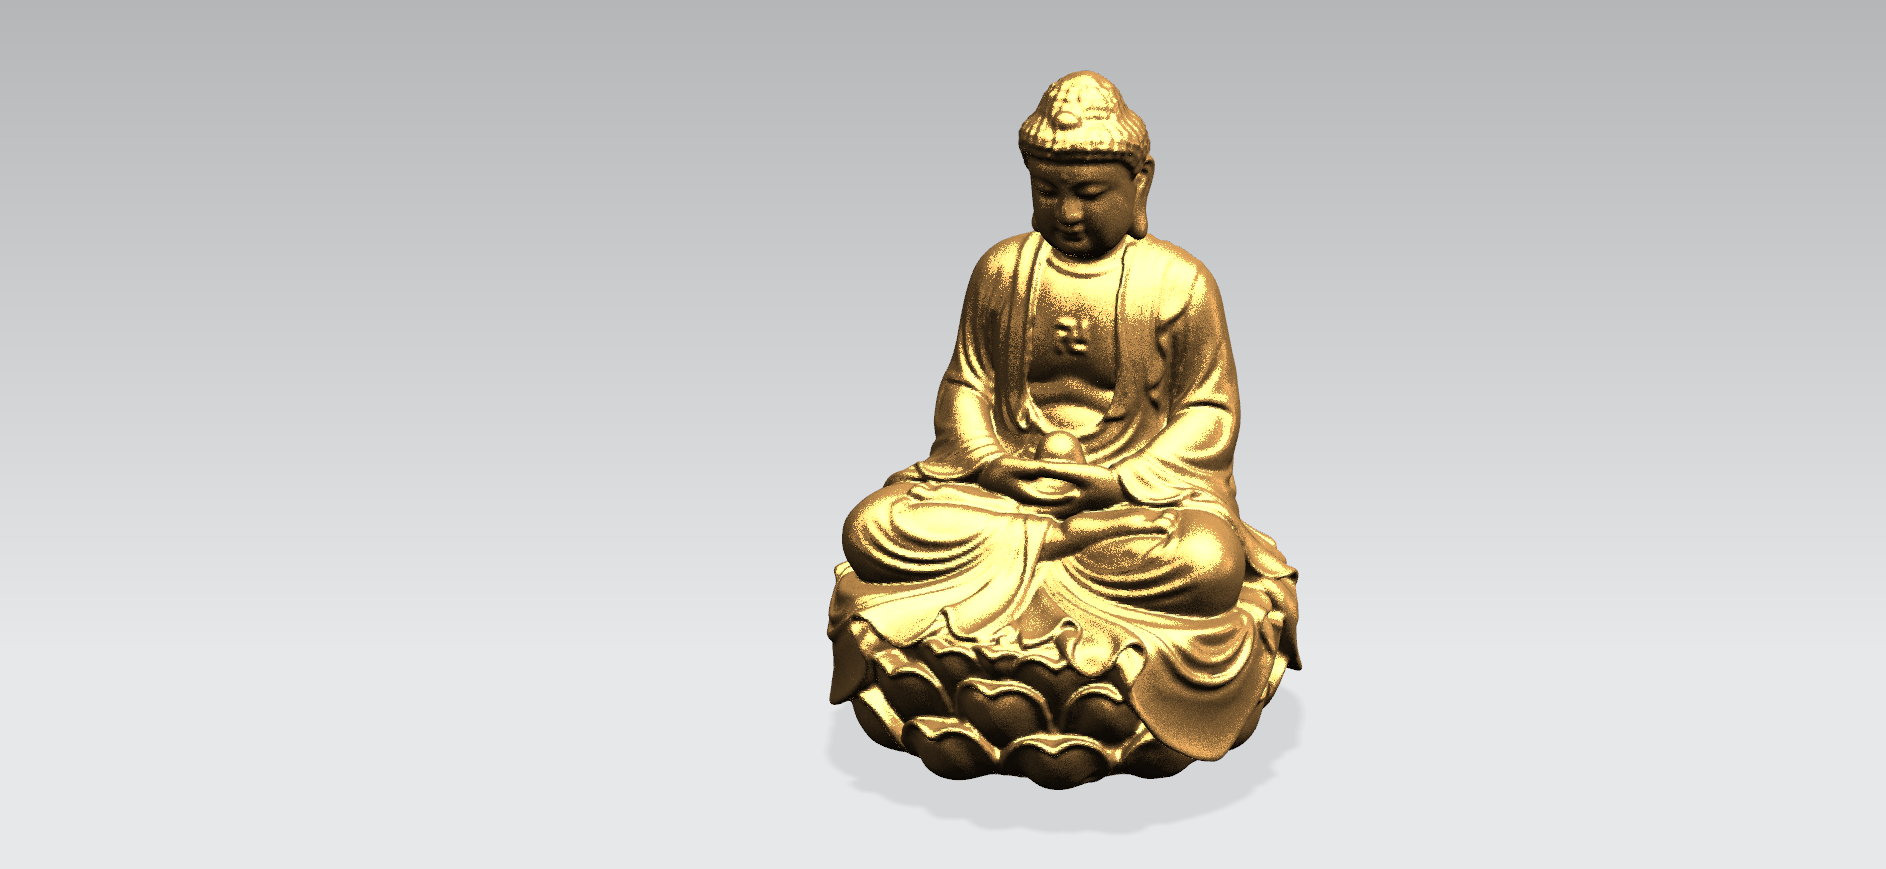 Будда в 3. Будда 3д модель. Будда в лодке. Лицо Будды 3d модель. Миниатюра Будды в 35 масштабе.